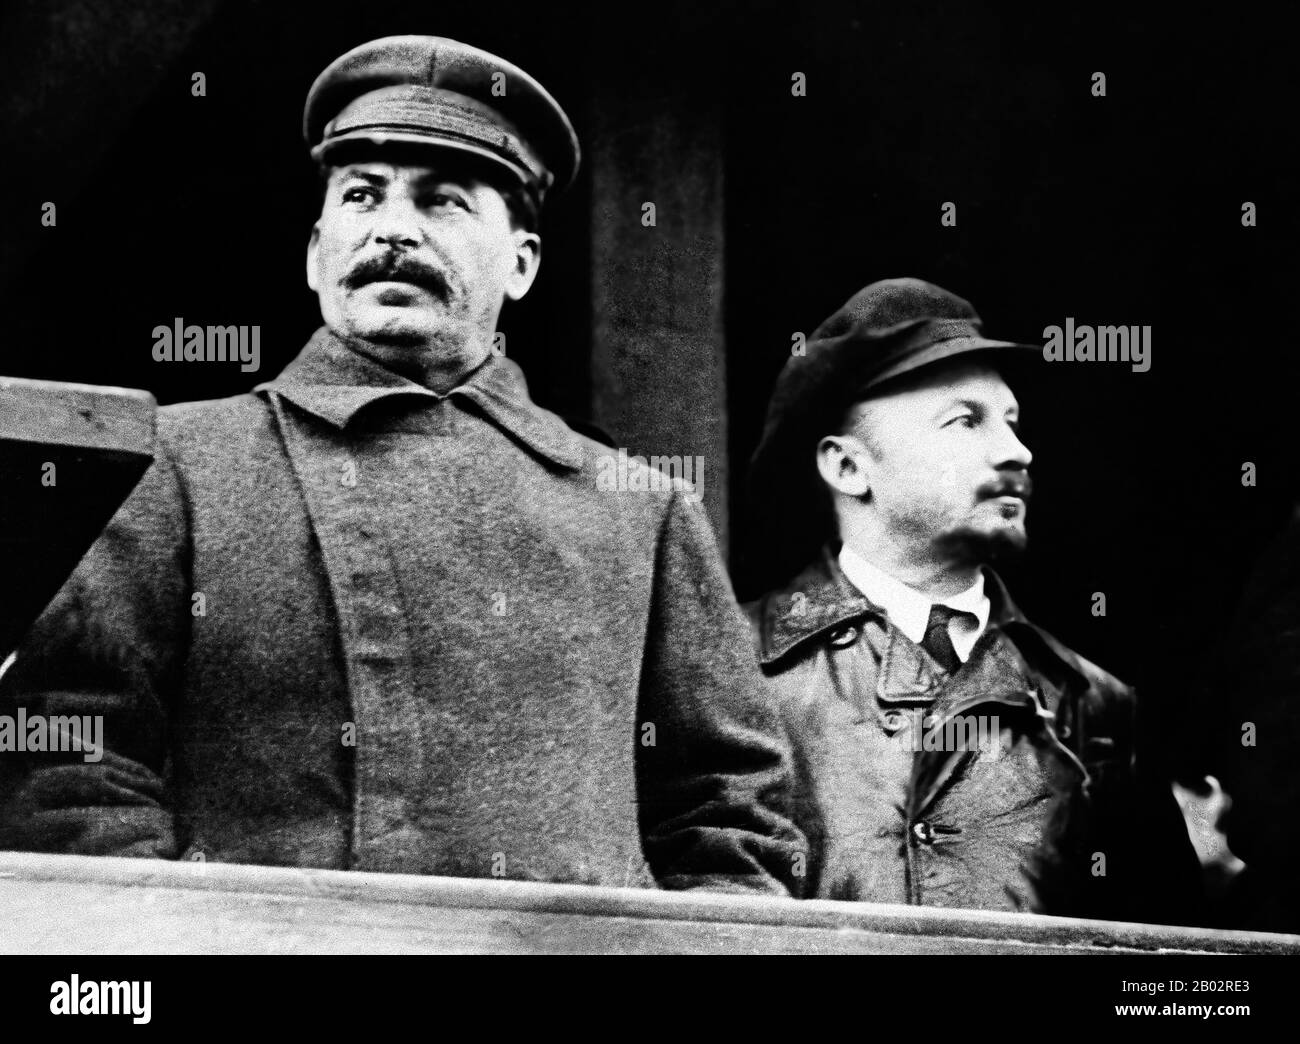 Joseph Vissarionovich Staline (18 décembre 1878 – 5 mars 1953) fut le premier secrétaire général du Parti communiste du Comité central de l'Union soviétique de 1922 à sa mort en 1953. Bien que officiellement le bureau du Secrétaire général soit électif et n'ait pas été initialement considéré comme la position de tête dans l'État soviétique, après la mort de Vladimir Lénine en 1924, Staline a réussi à consolider de plus en plus de pouvoir entre ses mains, mettant progressivement en place tous les groupes d'opposition au sein du parti. Nikolai Ivanovitch Bukharin (9 octobre 1888 – 15 mars 1938) était un po soviétique révolutionnaire bolchevique russe Banque D'Images